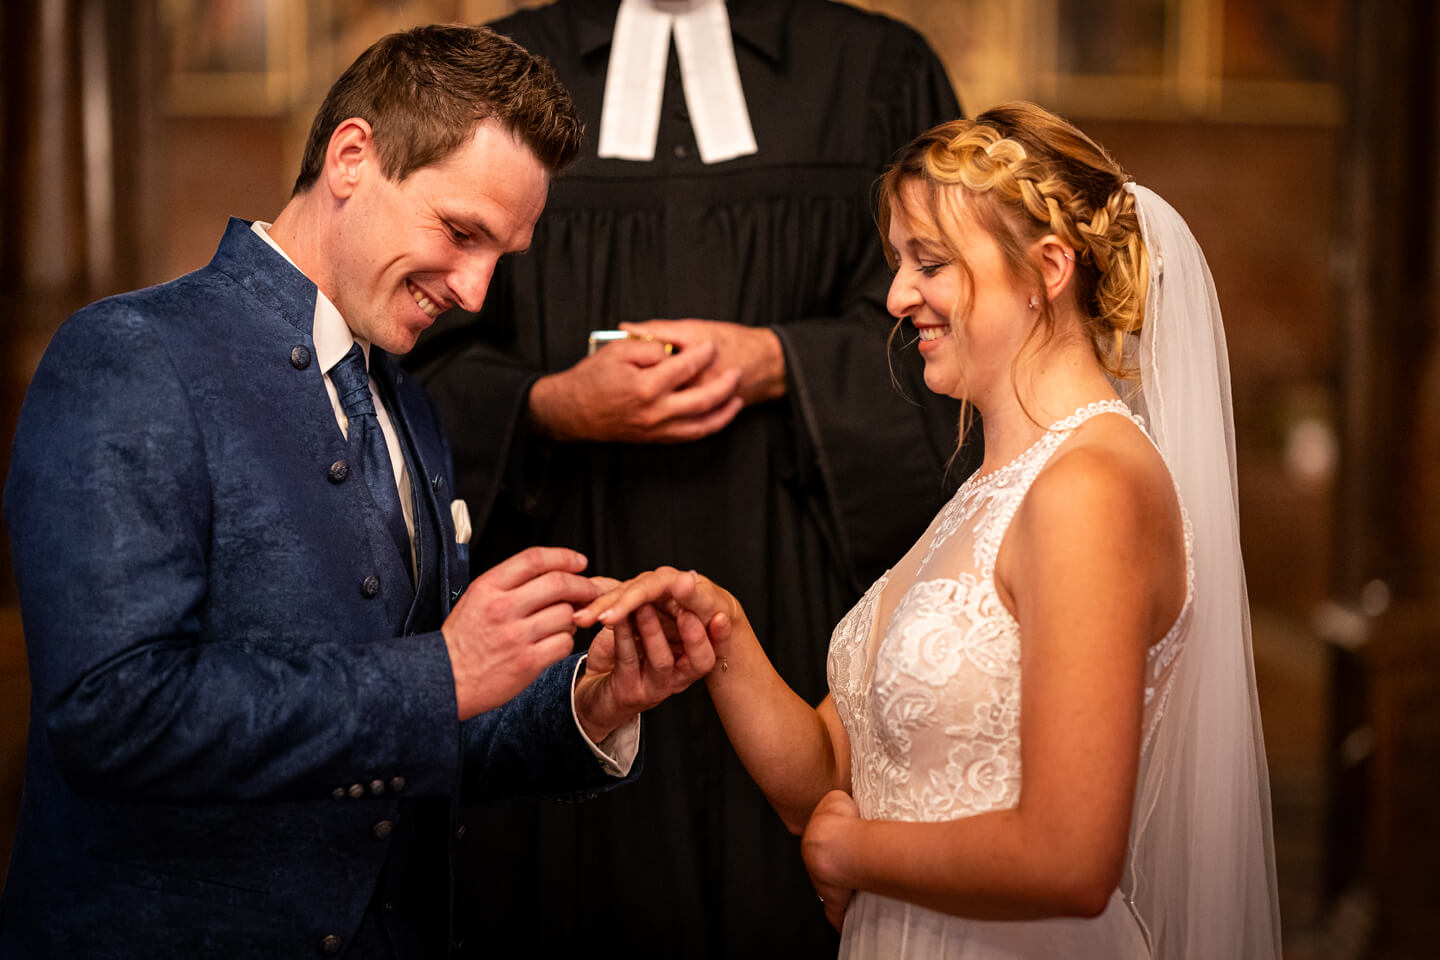 Ring aufstecken bei kirchliche Hochzeit im Meldorfer Dom in Schleswig-Holstein.